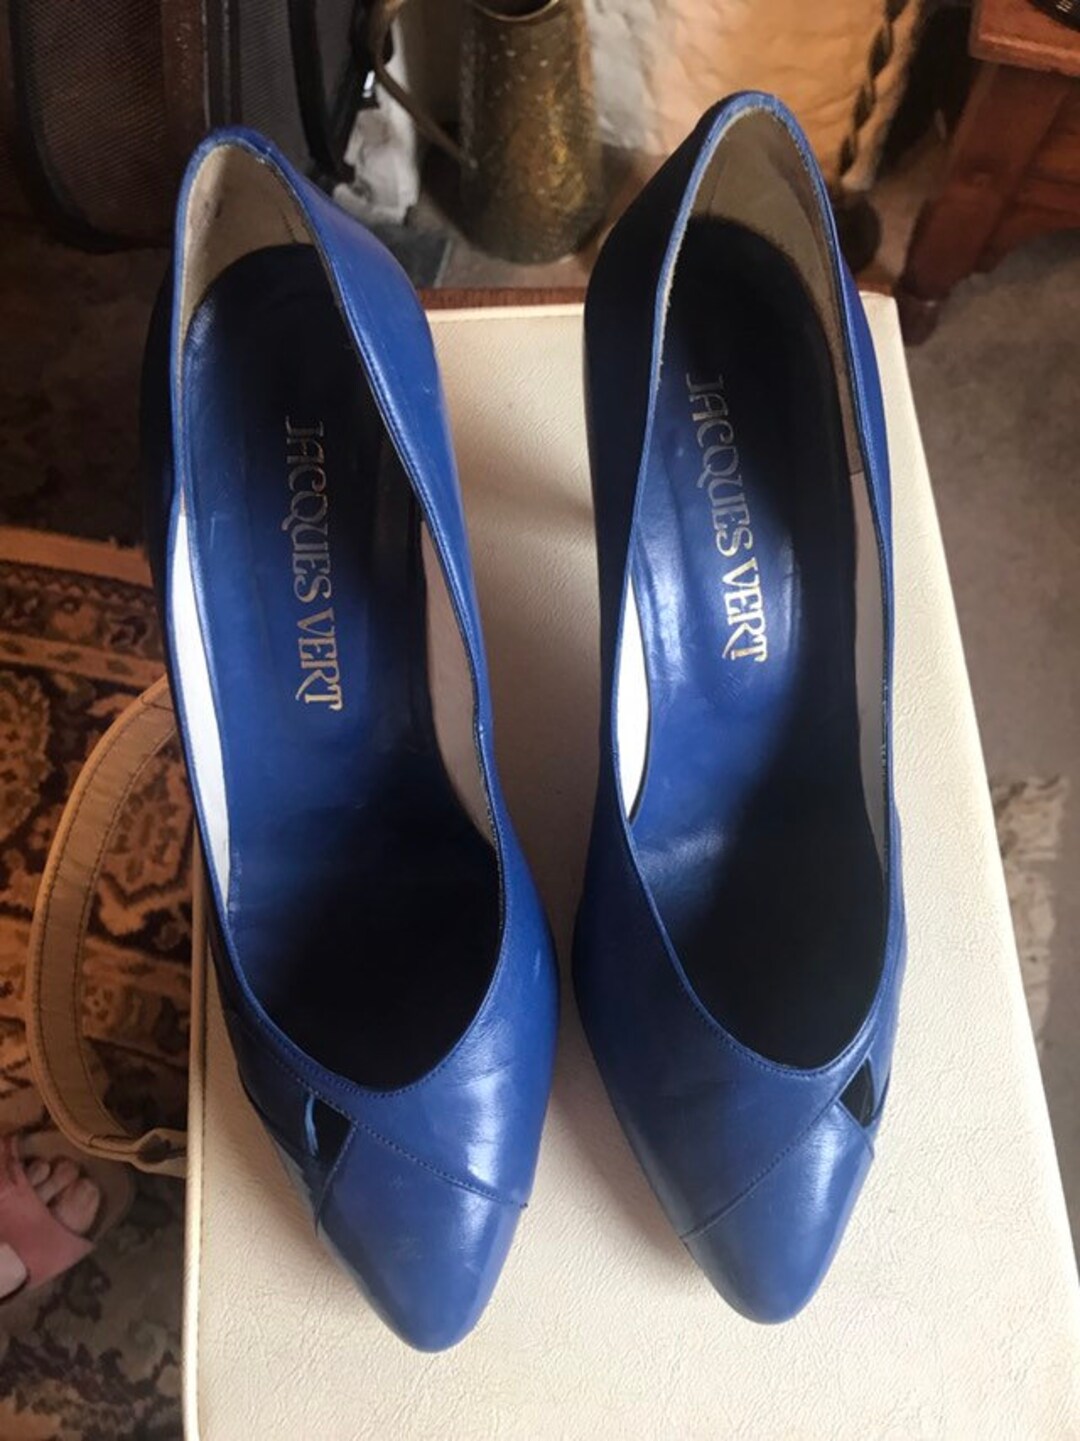 Vintage Royal Blue Court Shoes Pumps Slip Ons - Etsy UK